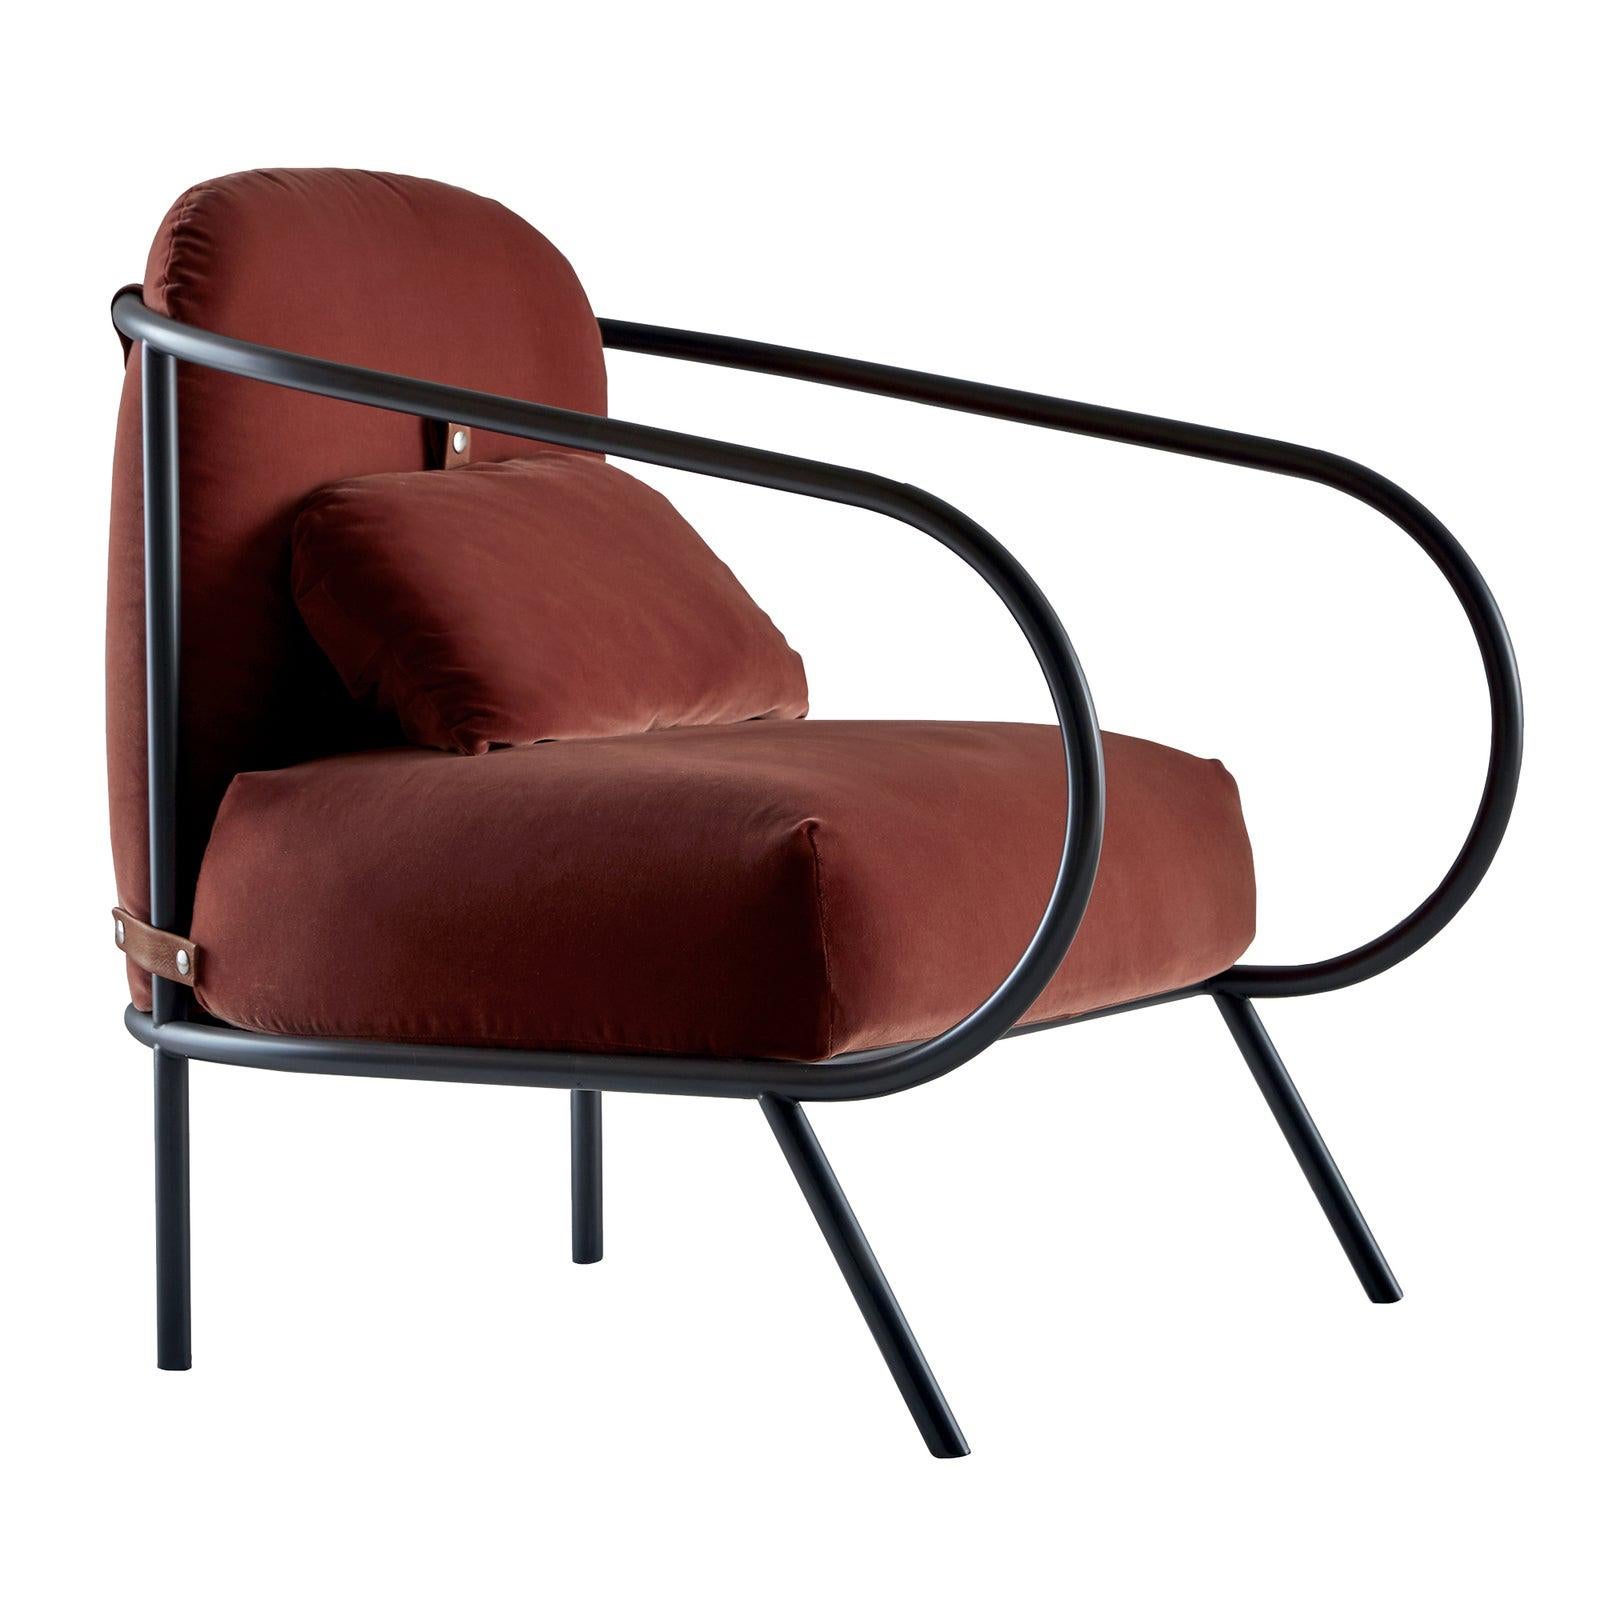 Minima Armchair by Mingardo